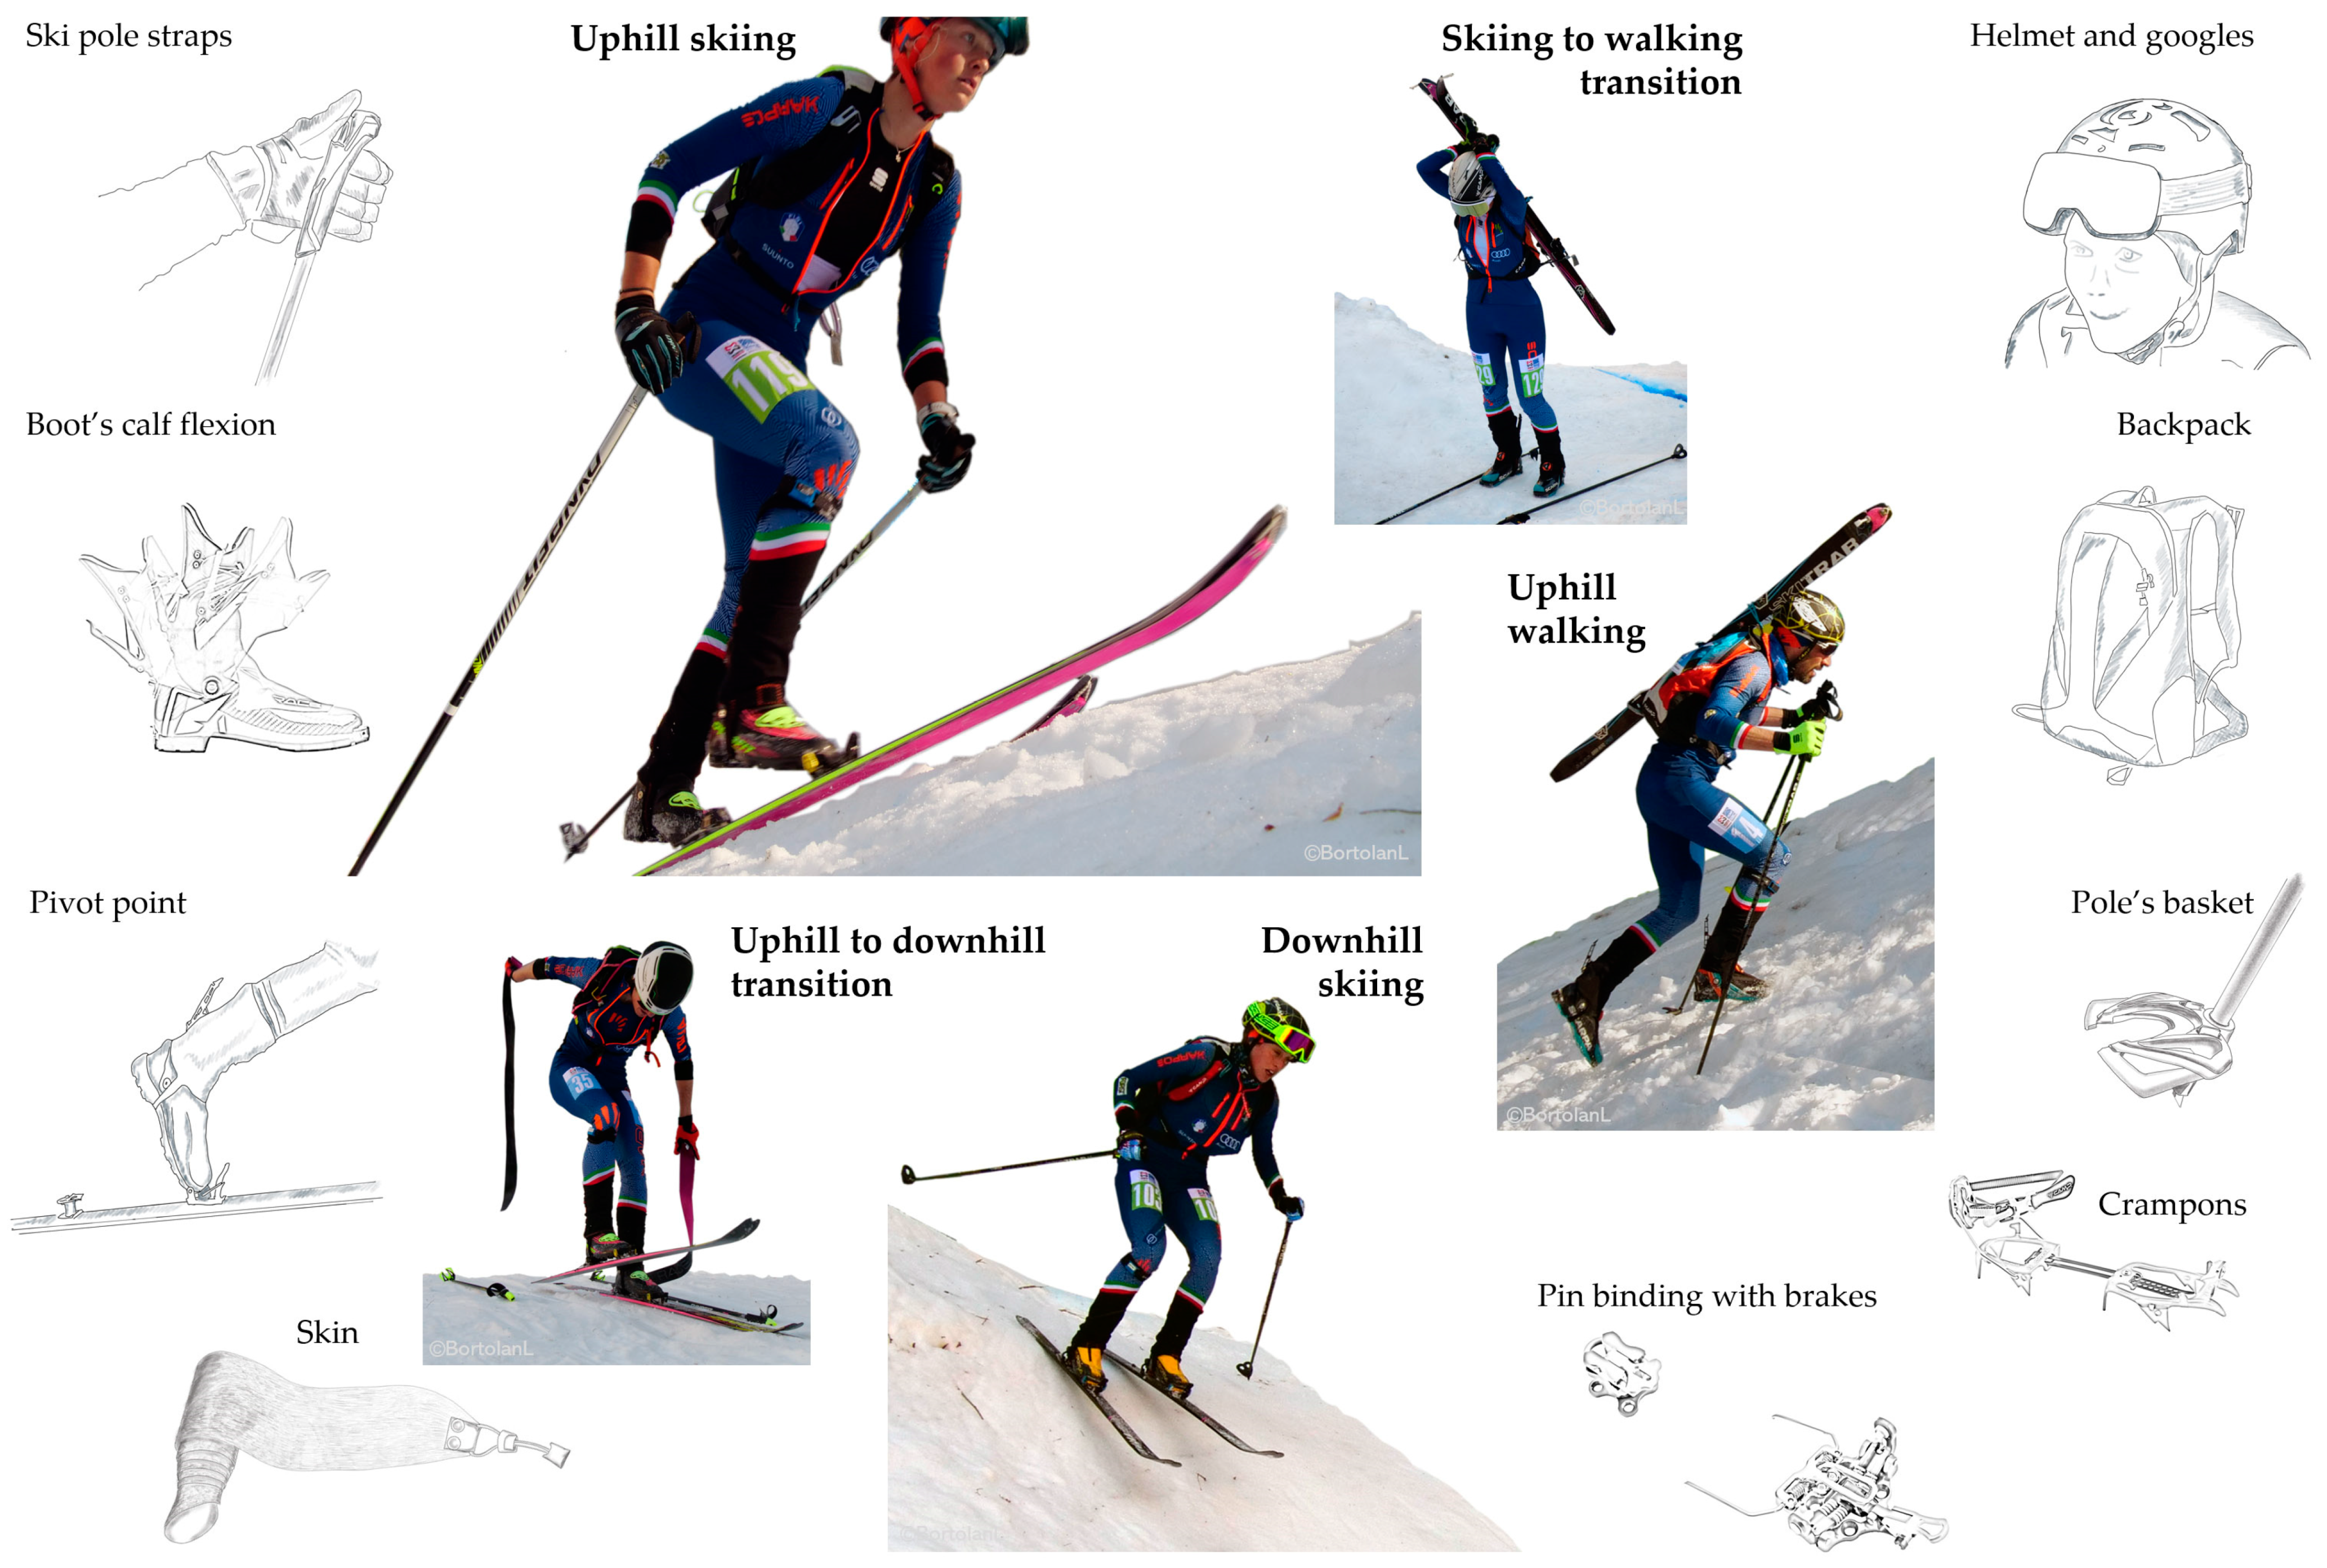 Miniature Ski equipment, 4 pieces, 9 cm long, winter decoration